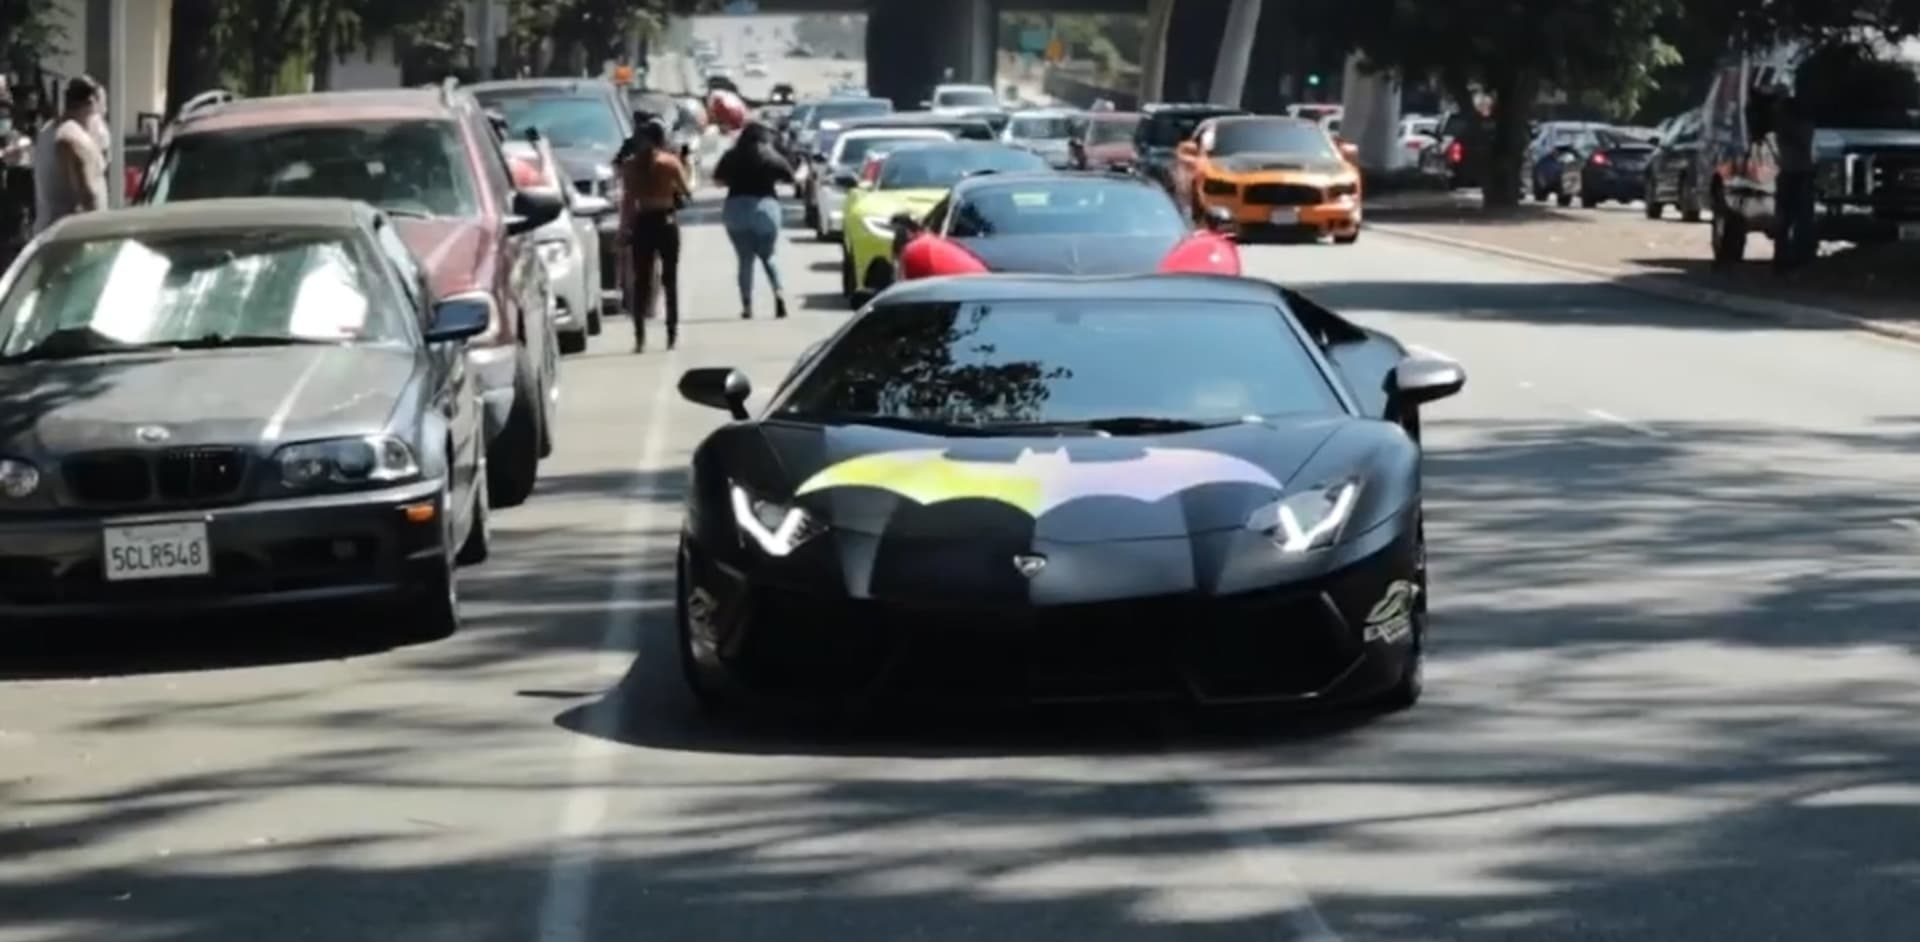 V kolně byla k vidění i auta známých superhrdinů, jako například Batmobil.